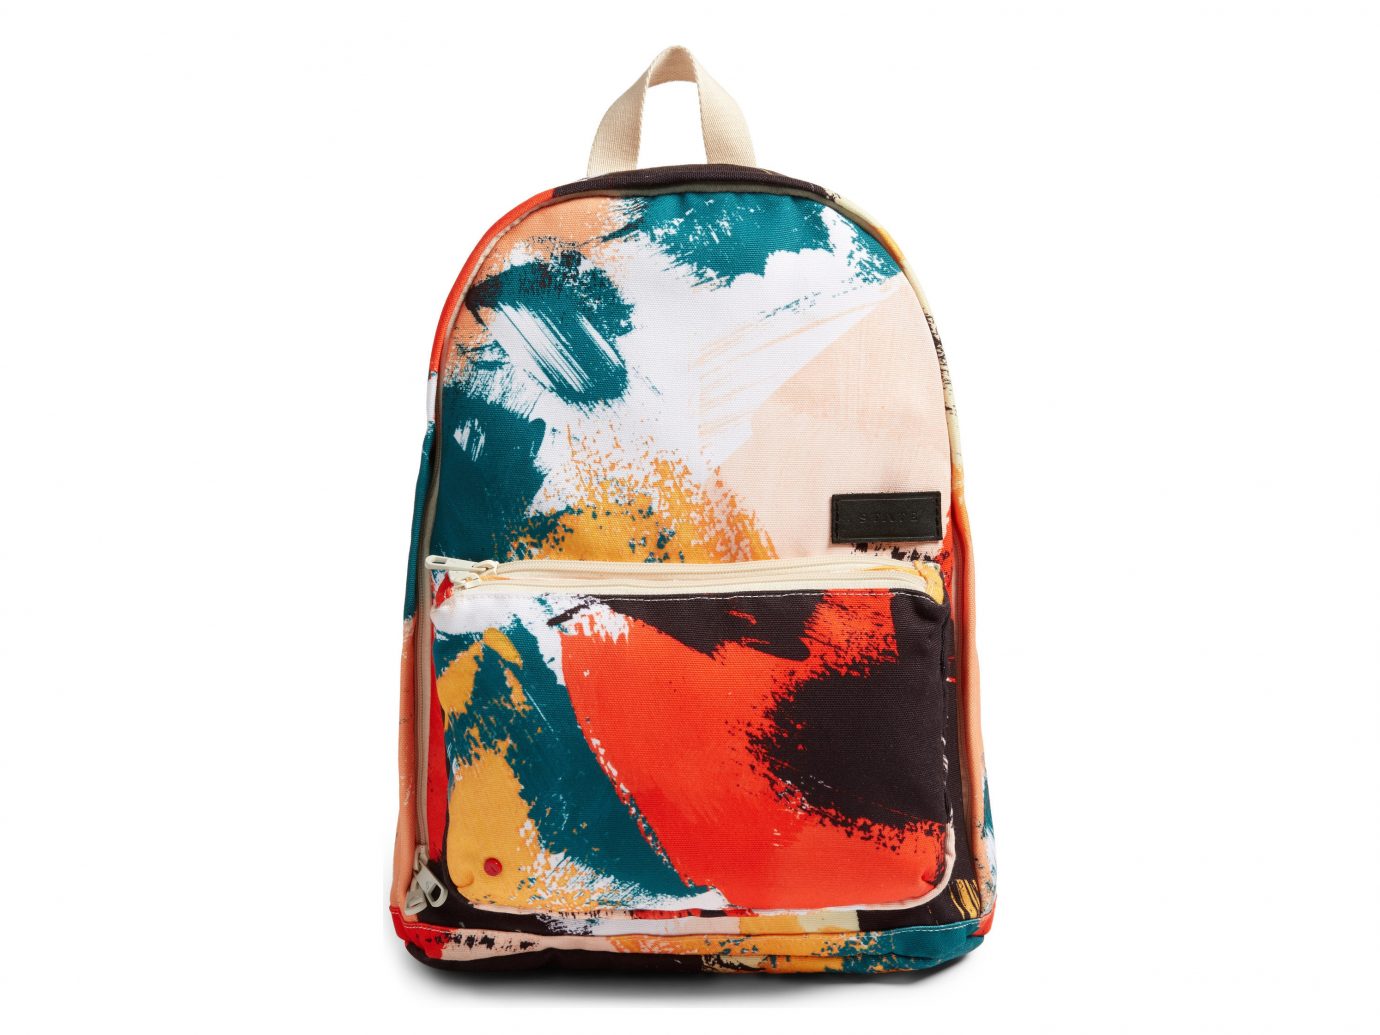 Style + Design bag shoulder bag backpack handbag product orange brand pattern accessory colored